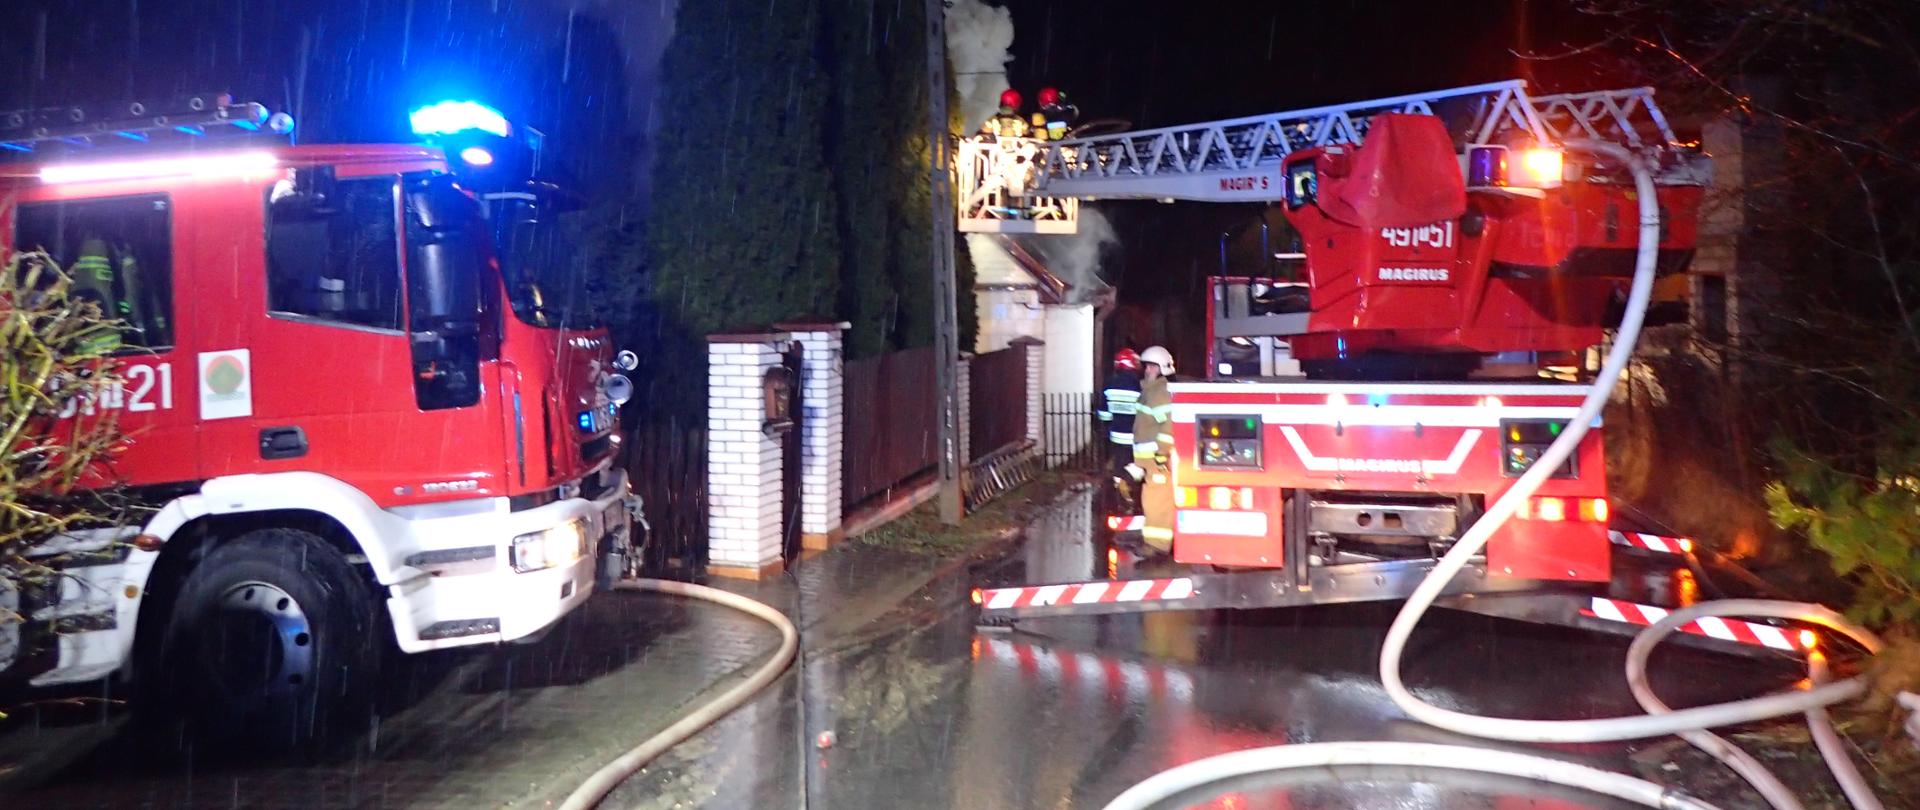 Pojazdy pożarnicze z liniami wężowymi przy pożarze budynku mieszkalnego. Pora nocna